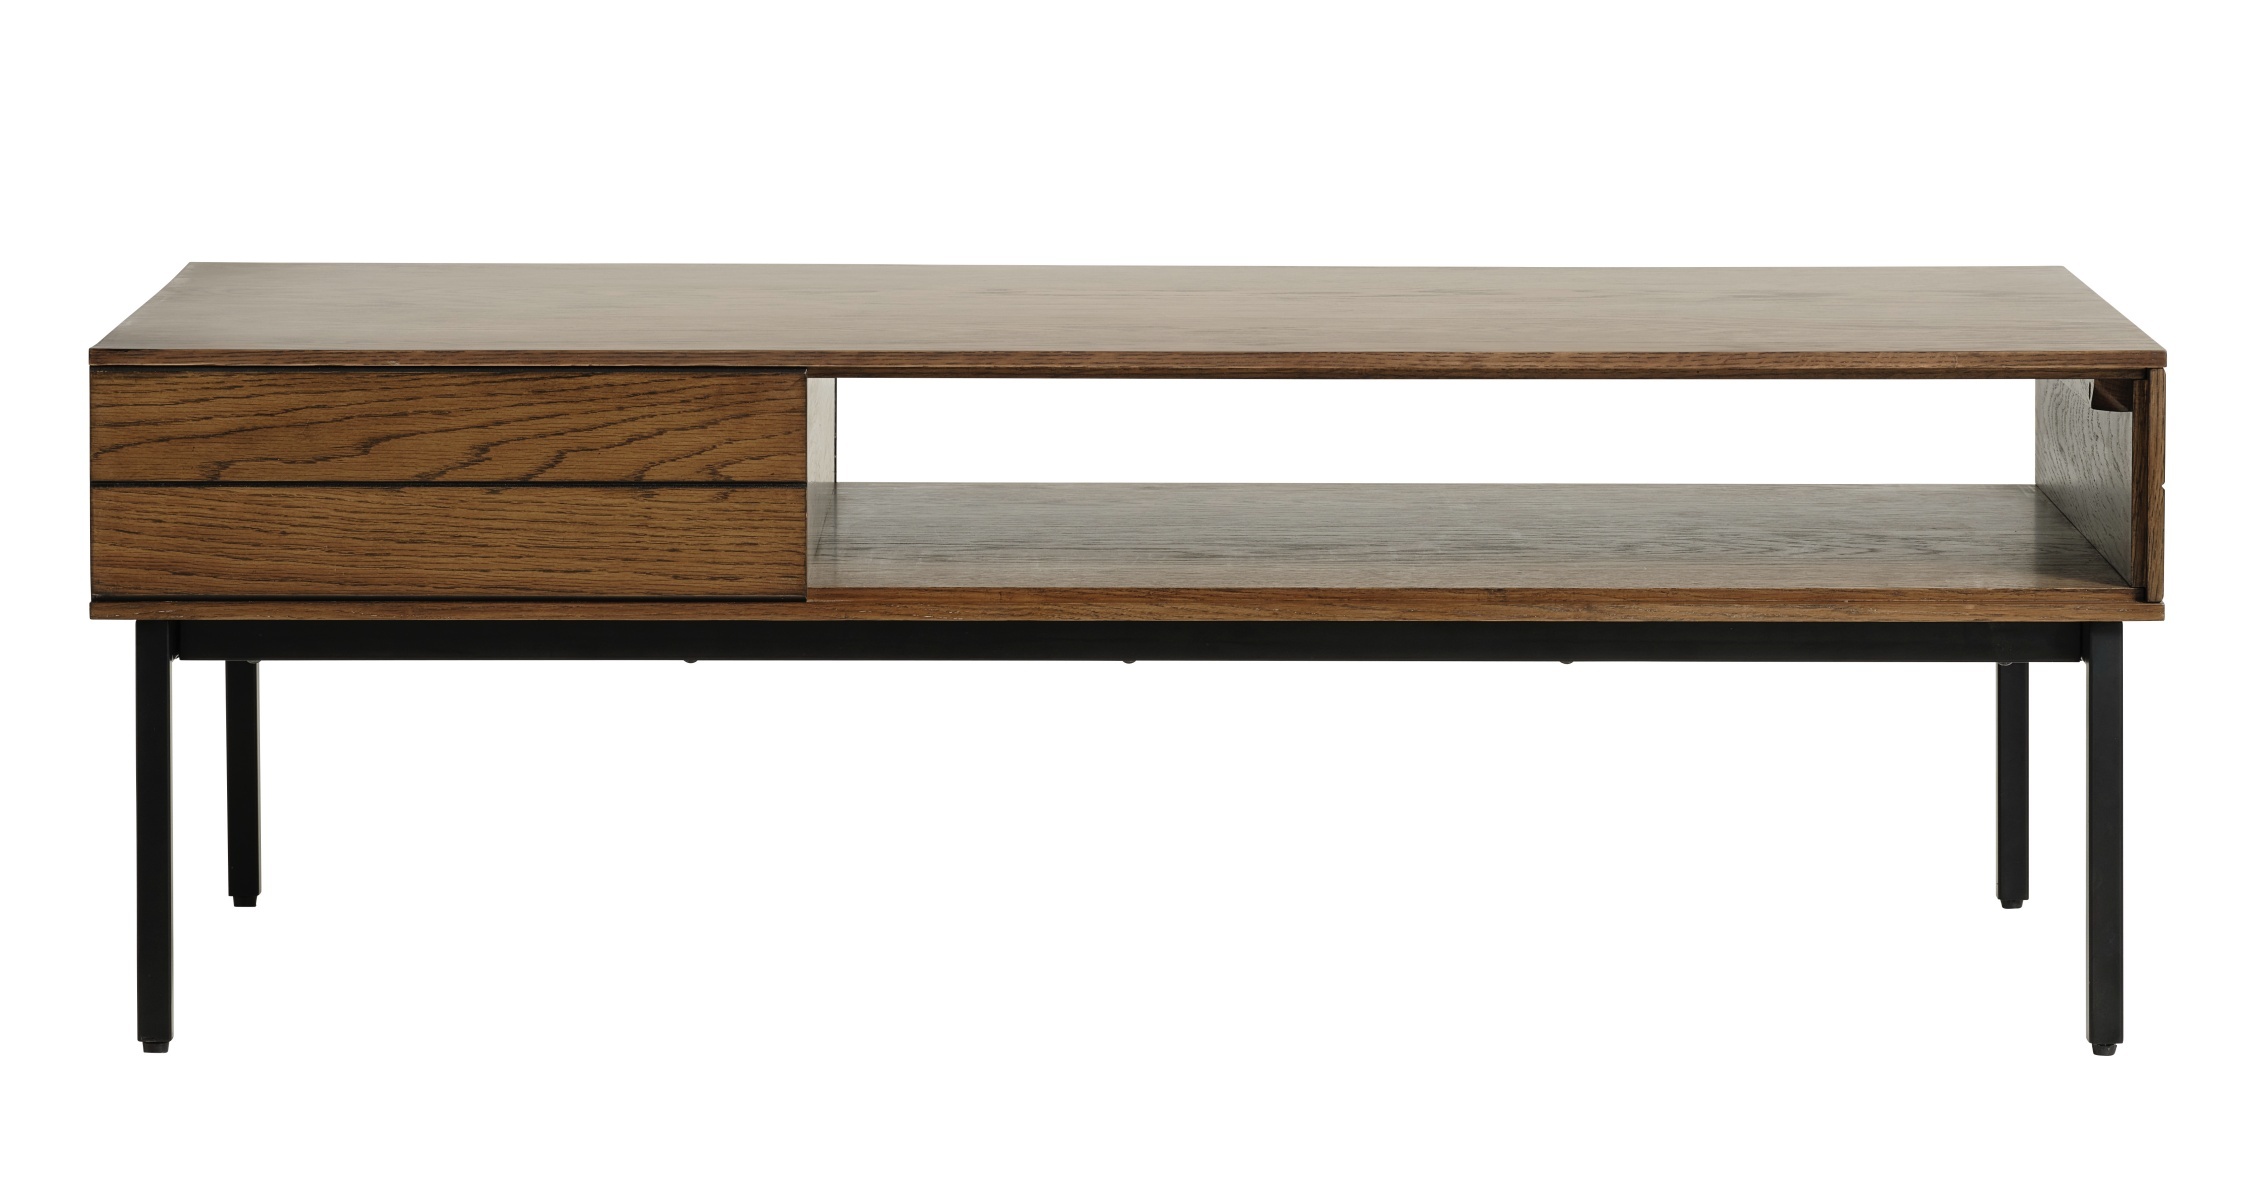 Table basse moderne Ationave 62x120 cm avec un tiroir en chêne brûlé